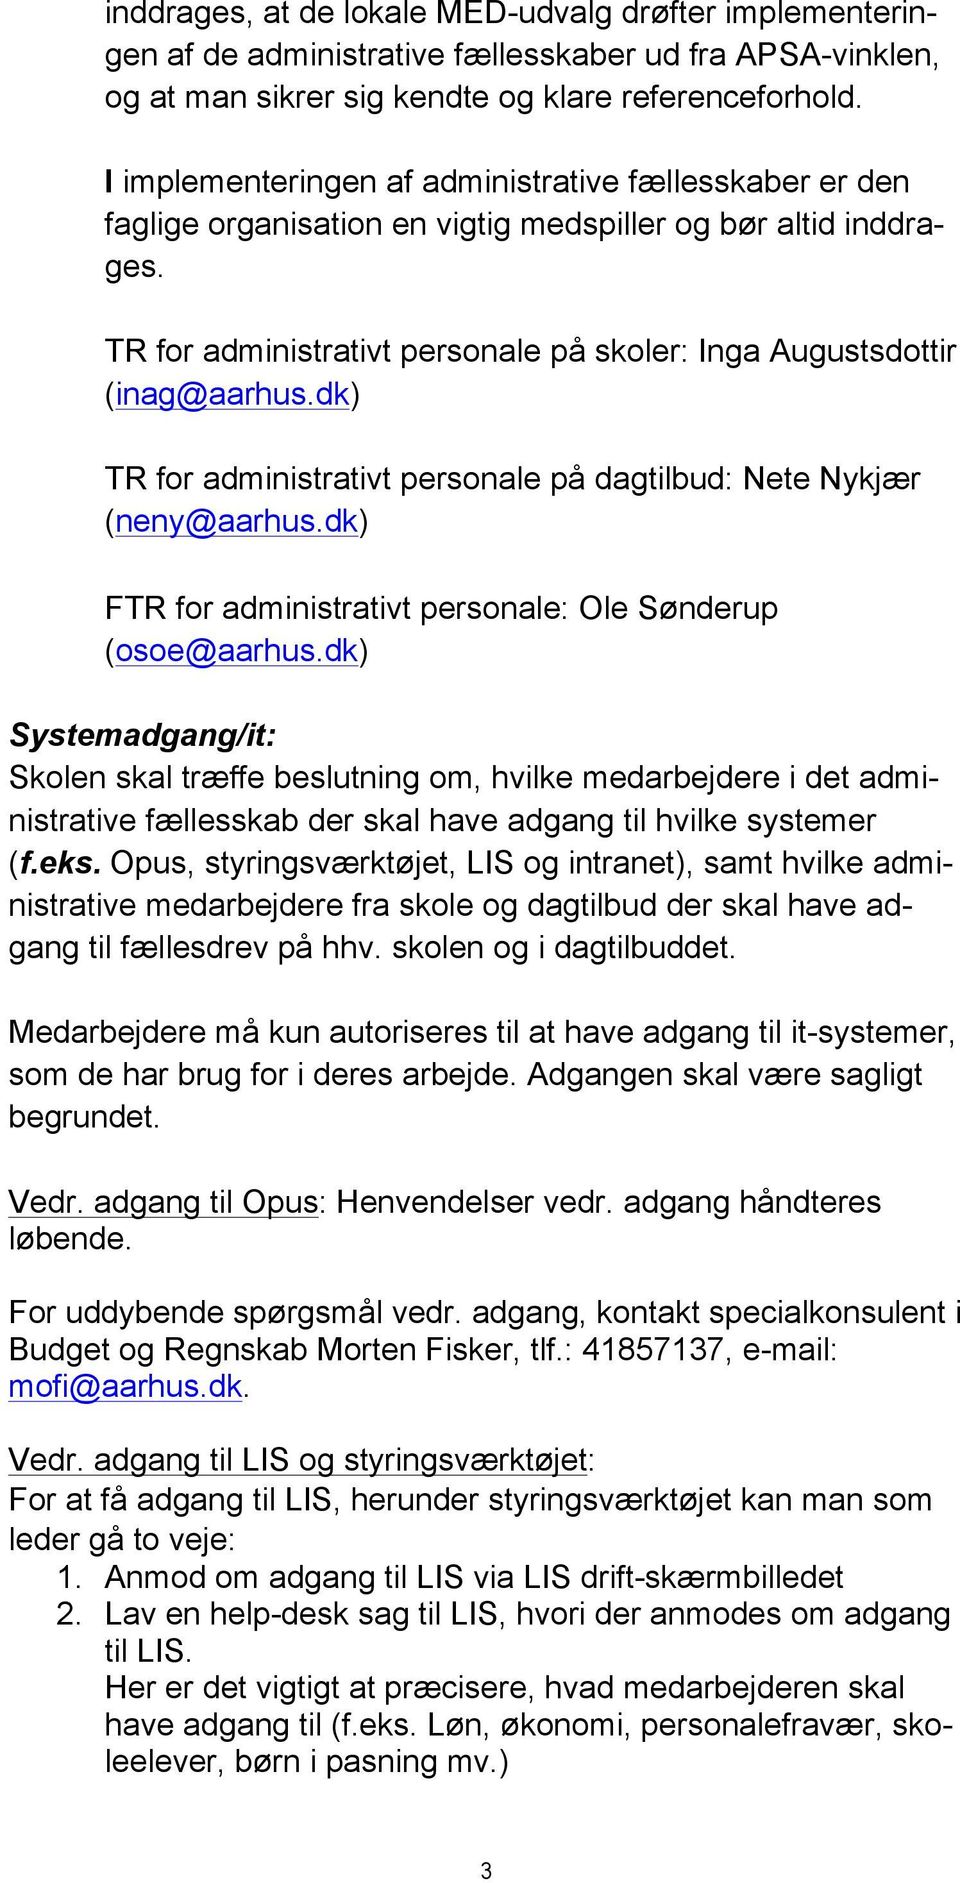 dk) TR for administrativt personale på dagtilbud: Nete Nykjær (neny@aarhus.dk) FTR for administrativt personale: Ole Sønderup (osoe@aarhus.